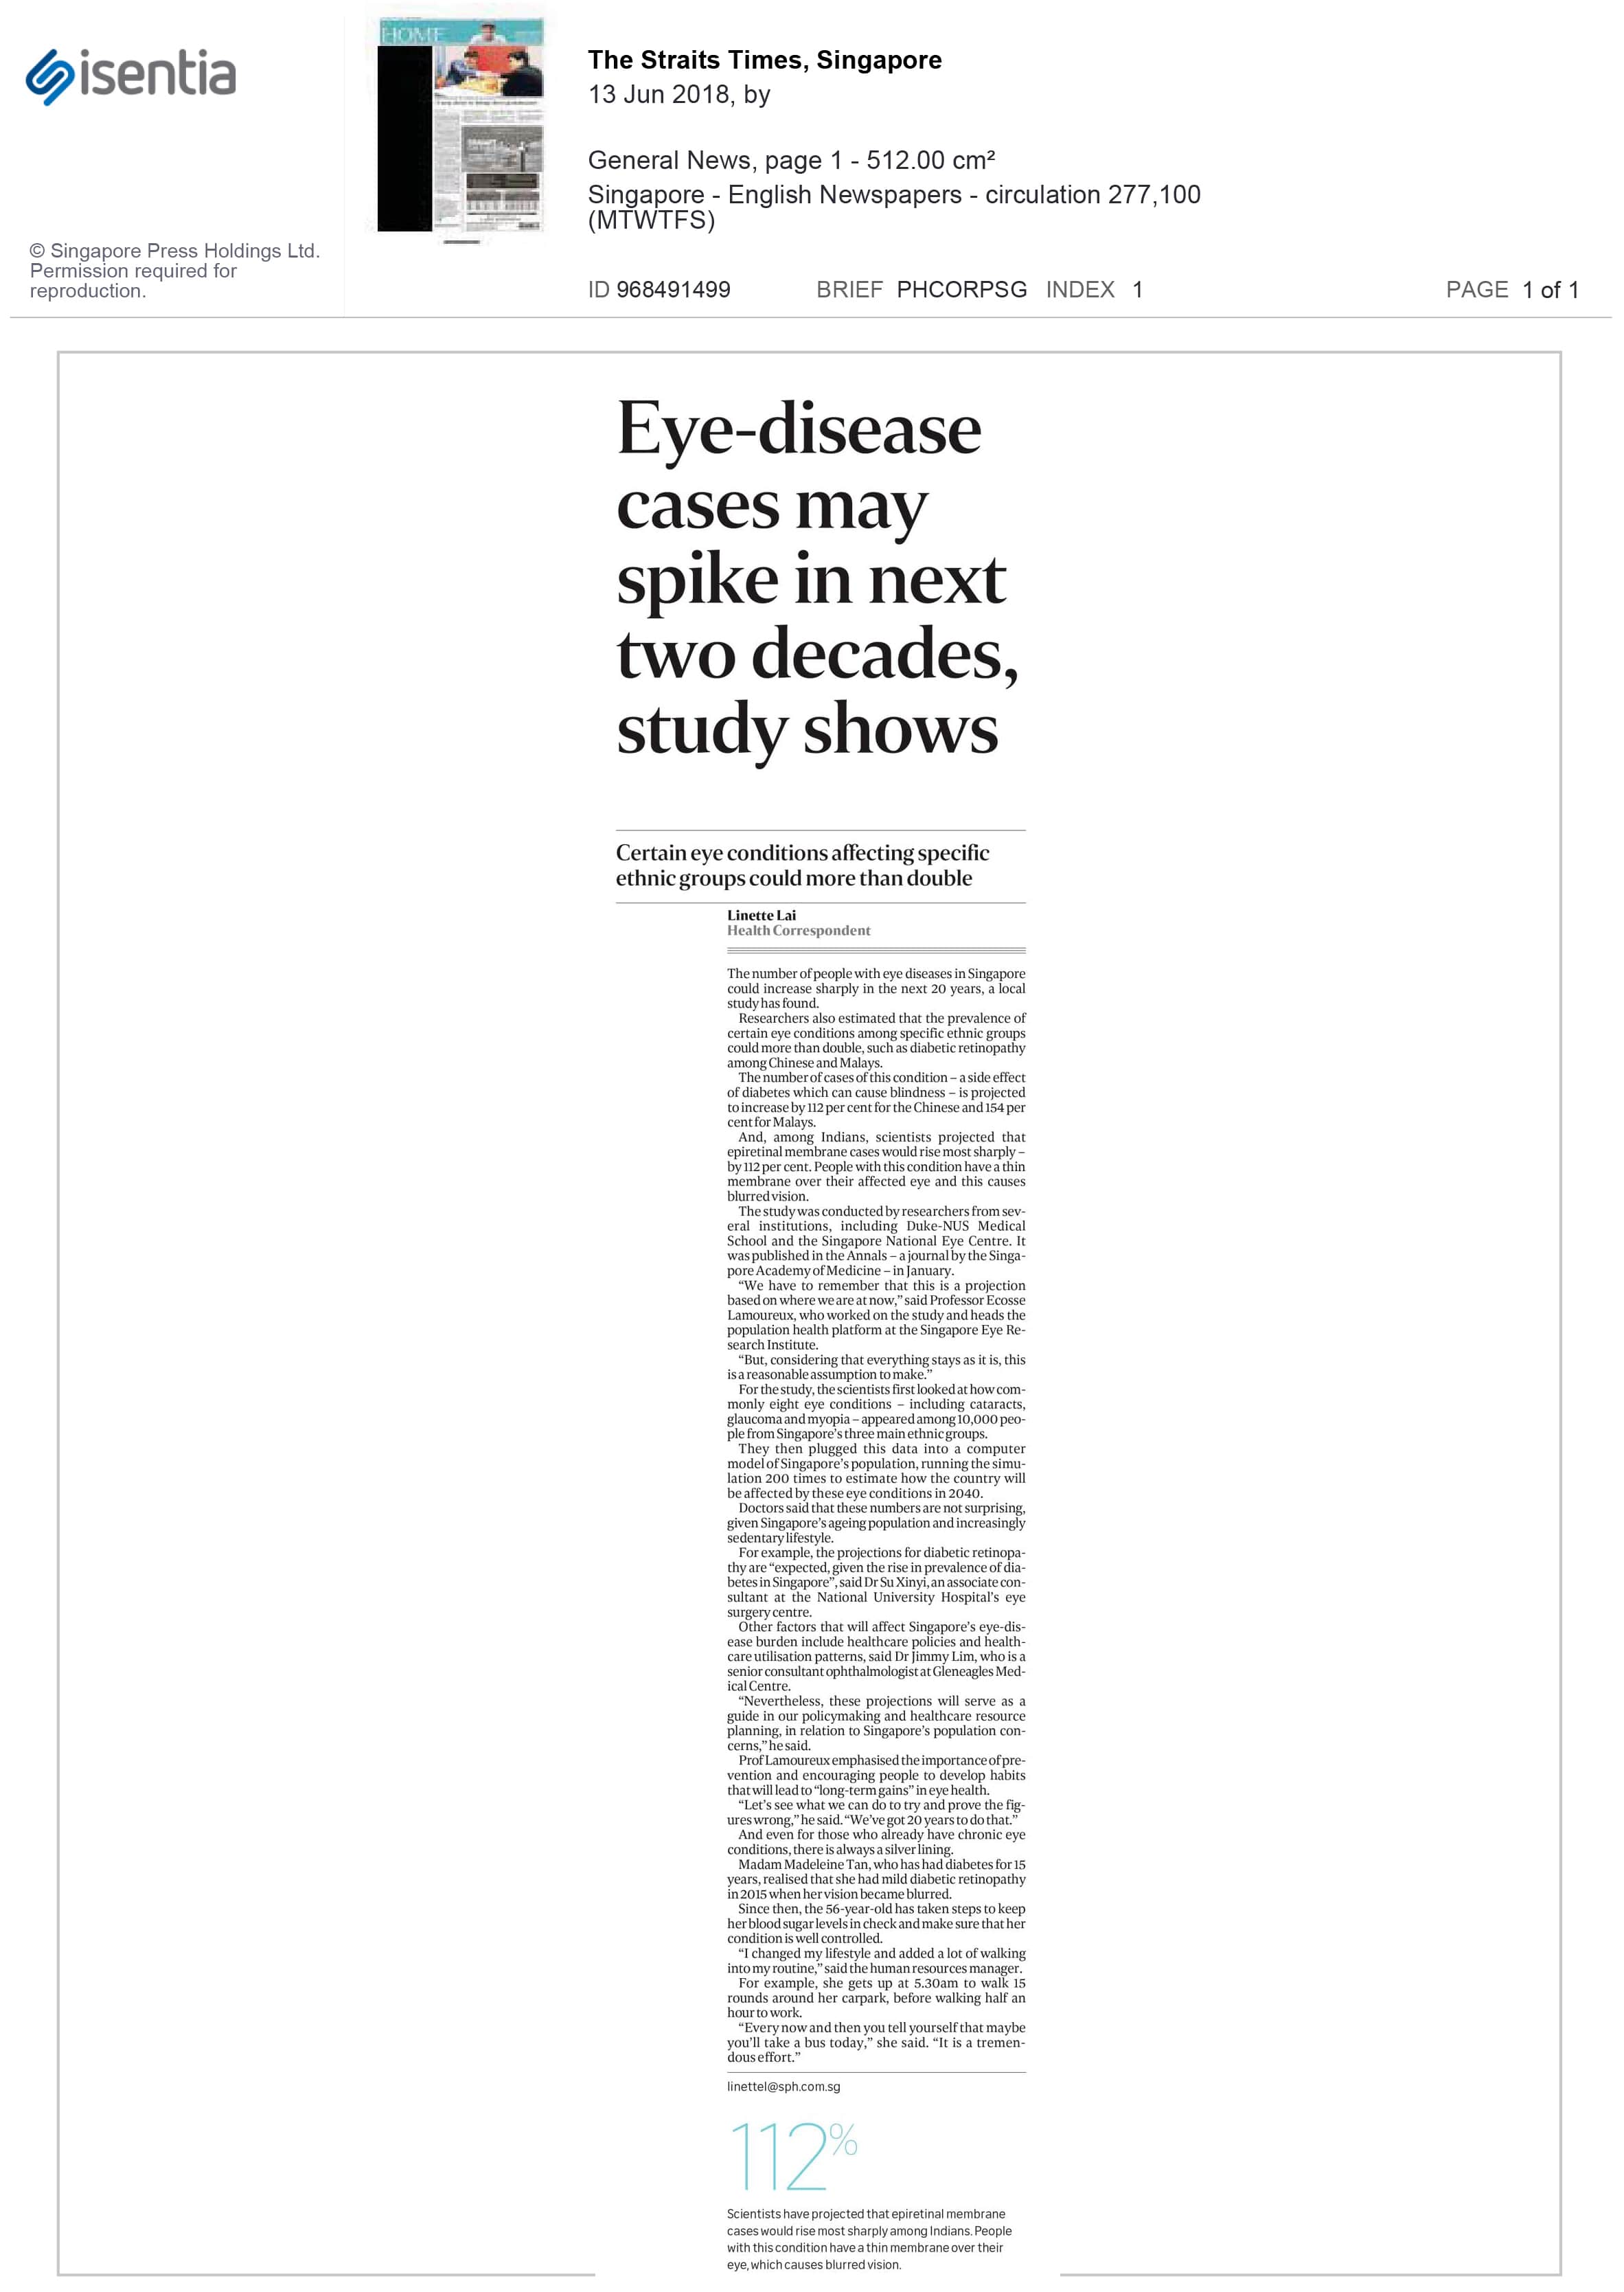 the-straits-times-eye-disease-spike